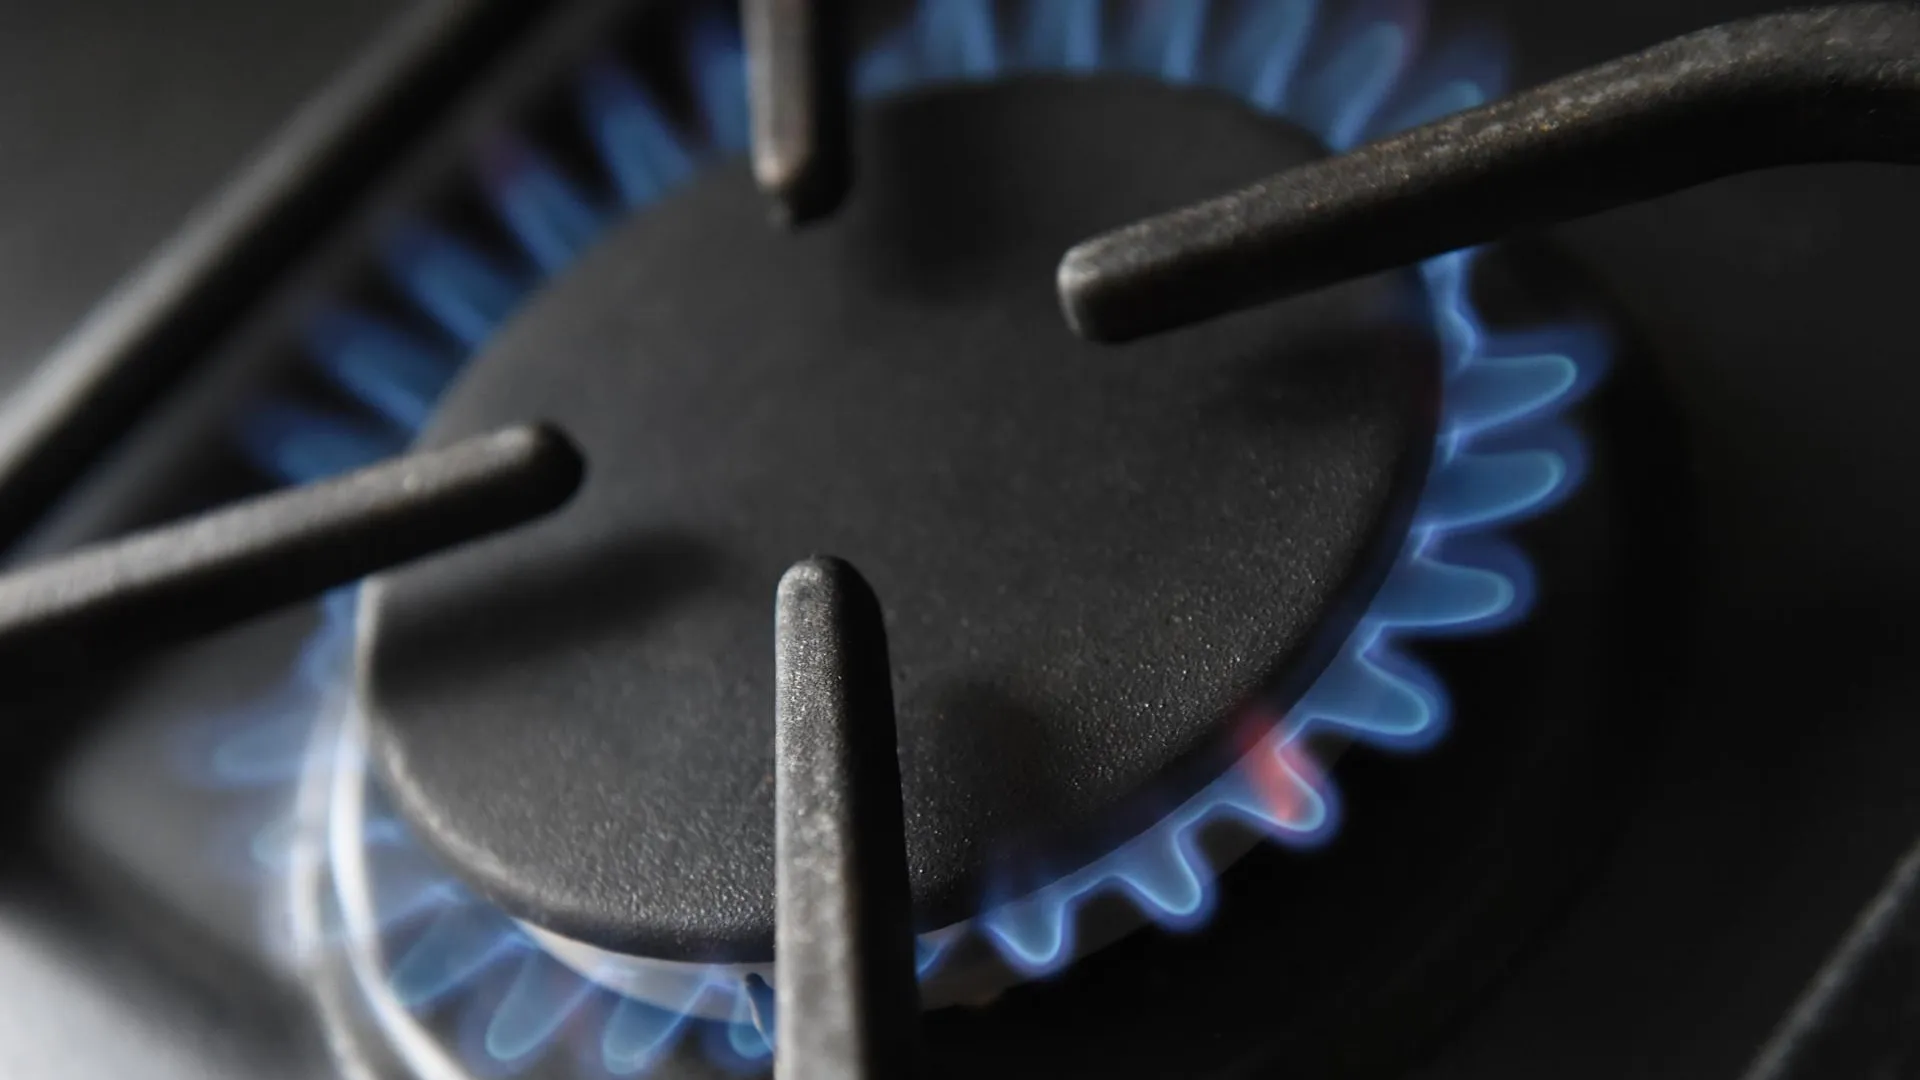 Жителям Подмосковья напомнили об изменении цен на природный газ